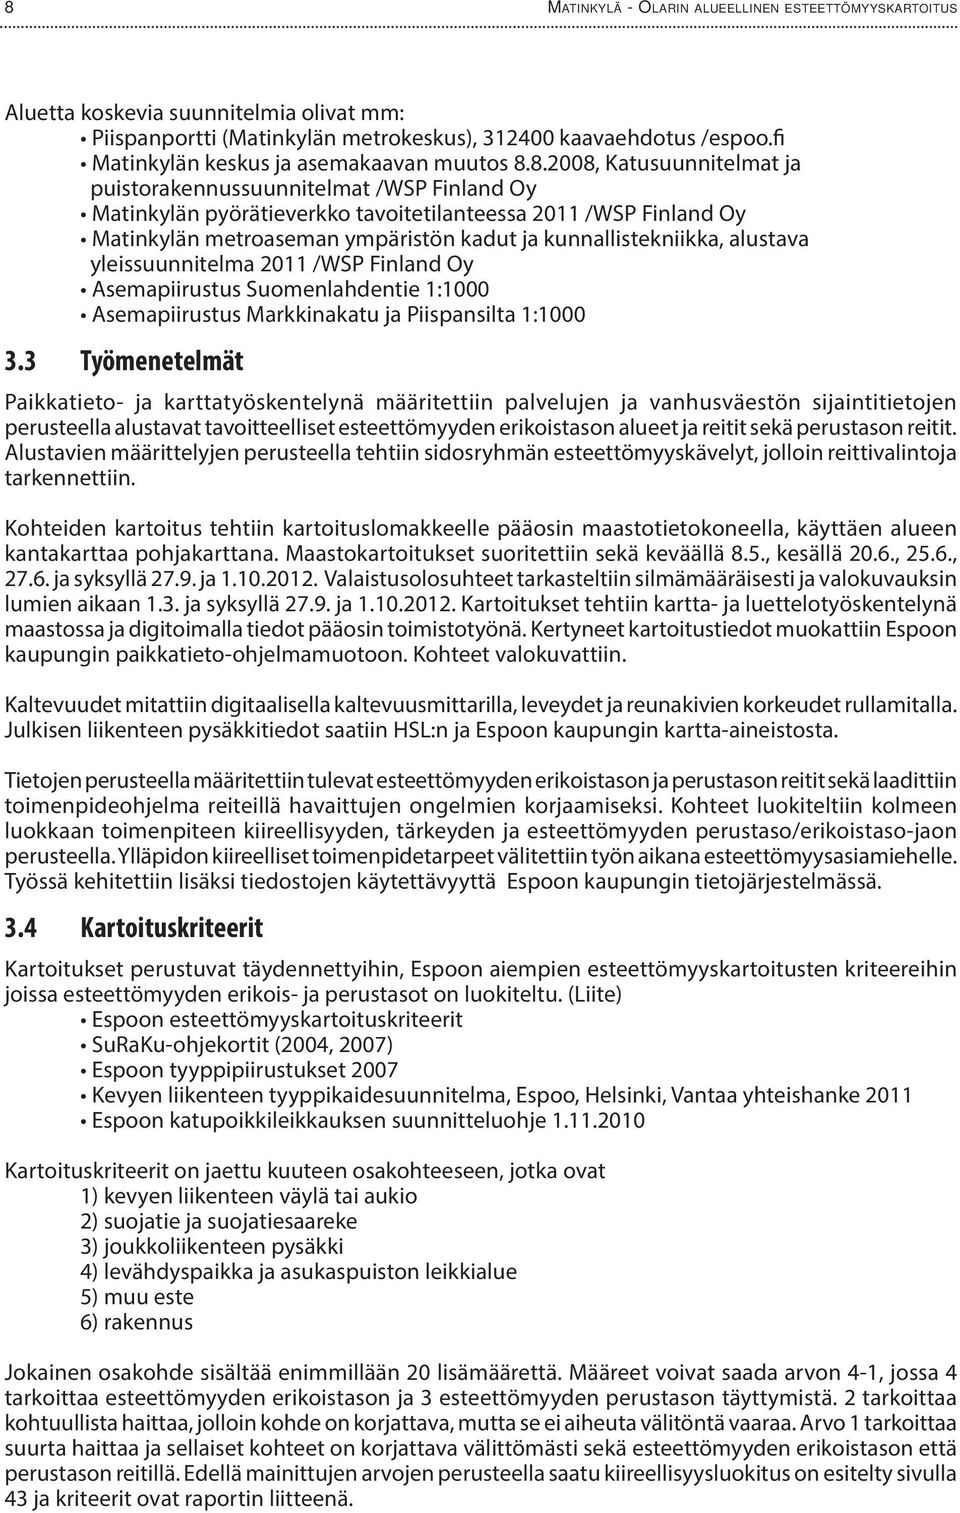 8.2008, Katusuunnitelmat ja puistorakennussuunnitelmat /WSP Finland Oy Matinkylän pyörätieverkko tavoitetilanteessa 2011 /WSP Finland Oy Matinkylän metroaseman ympäristön kadut ja kunnallistekniikka,